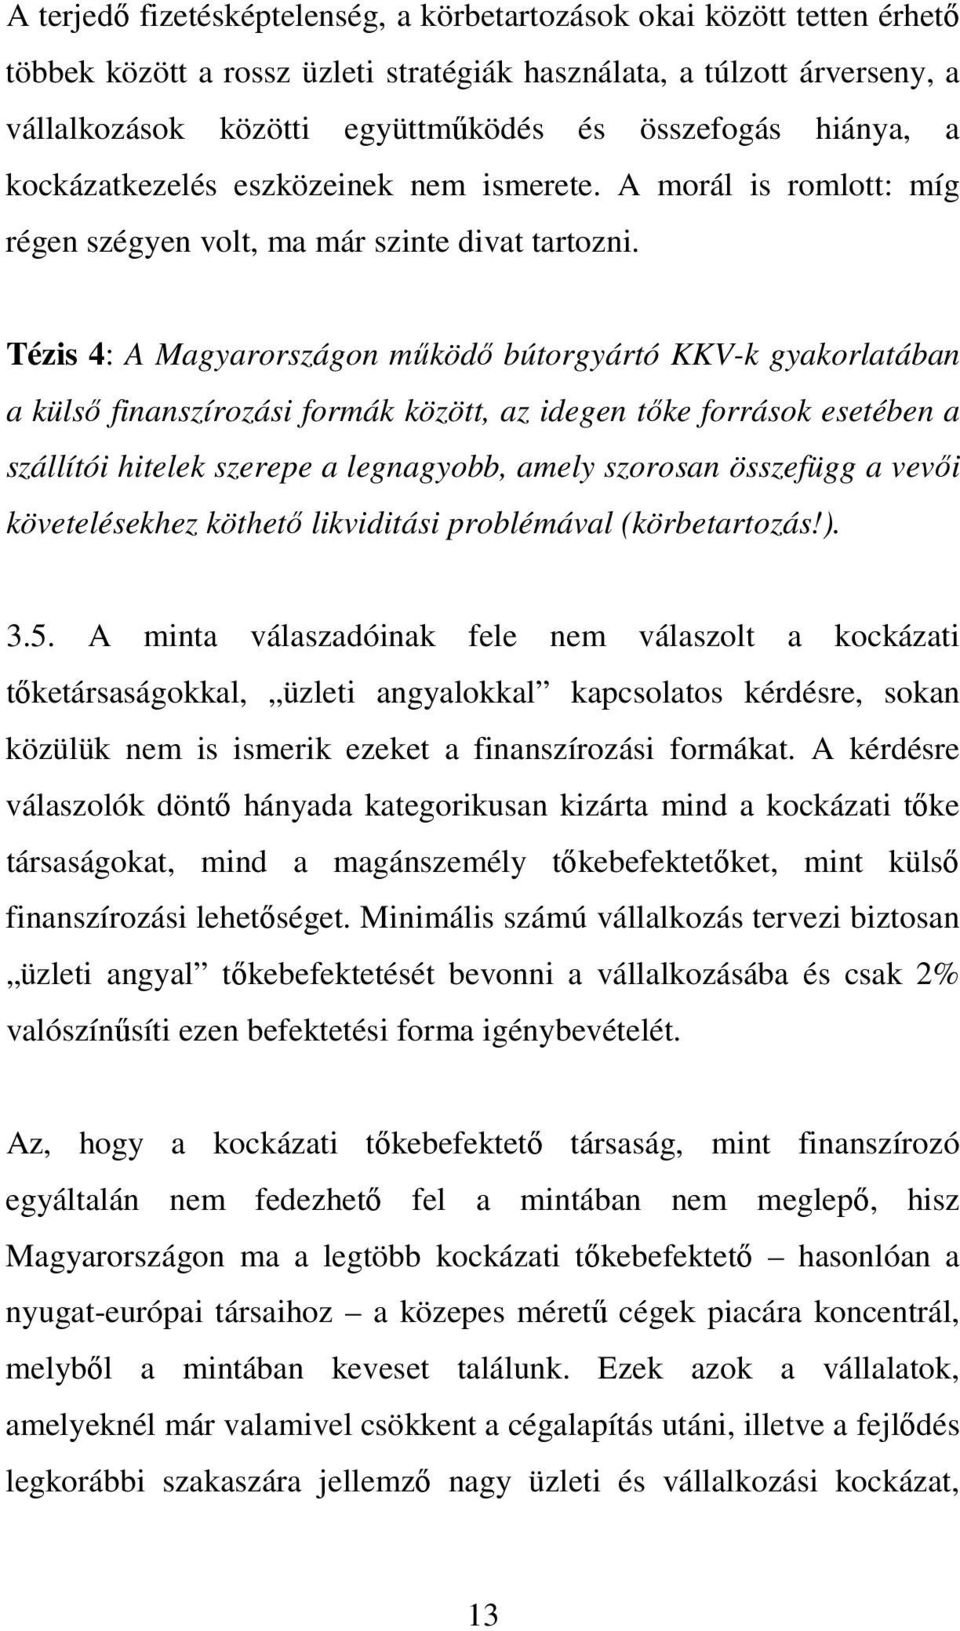 Tézis 4: A Magyarországon mőködı bútorgyártó KKV-k gyakorlatában a külsı finanszírozási formák között, az idegen tıke források esetében a szállítói hitelek szerepe a legnagyobb, amely szorosan